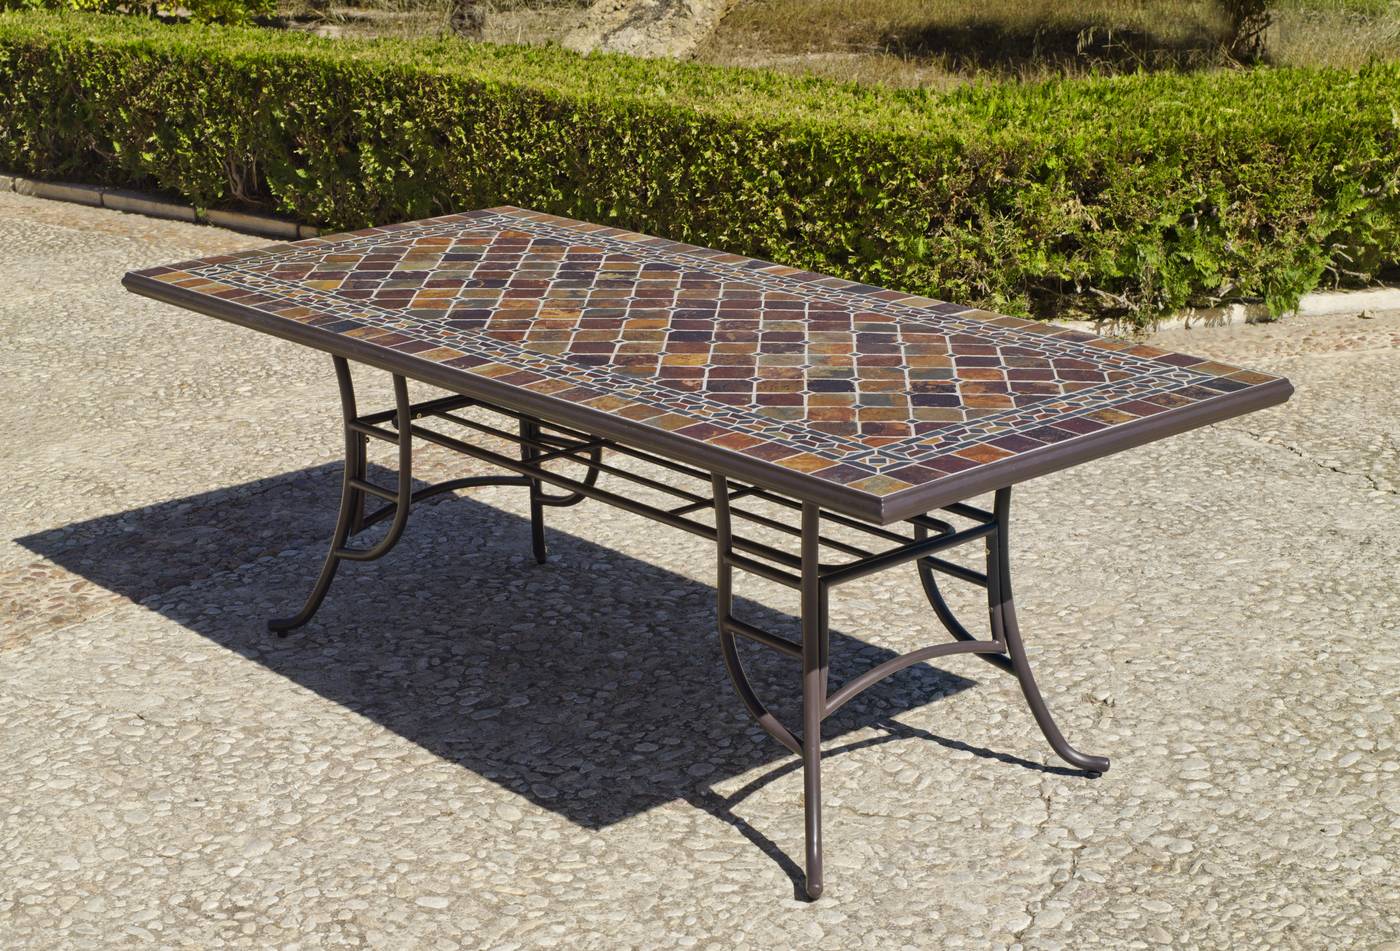 Conjunto Mosaico Luxe Yepara 210-8 - Conjunto lujoso de forja para jardín: 1 mesa con panel mosaico de pizarra + 8 sillones de forja + 8 cojines